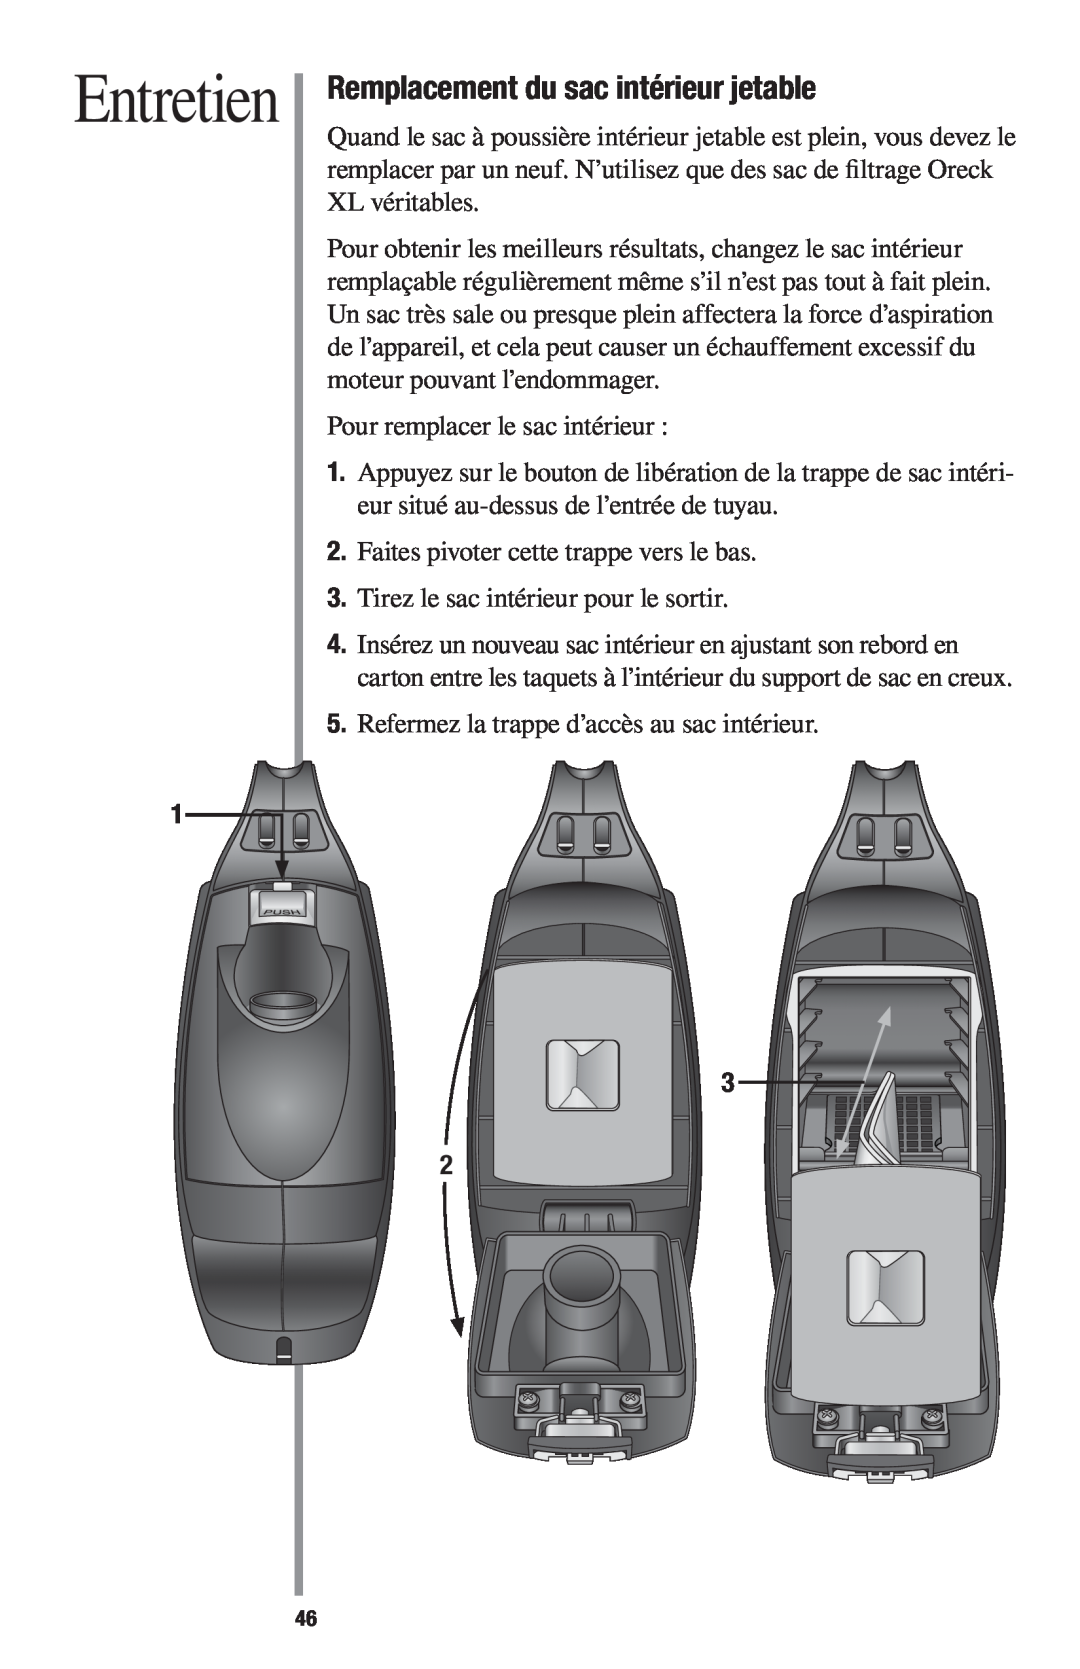 Oreck 1600 manual Entretien, Remplacement du sac intérieur jetable 